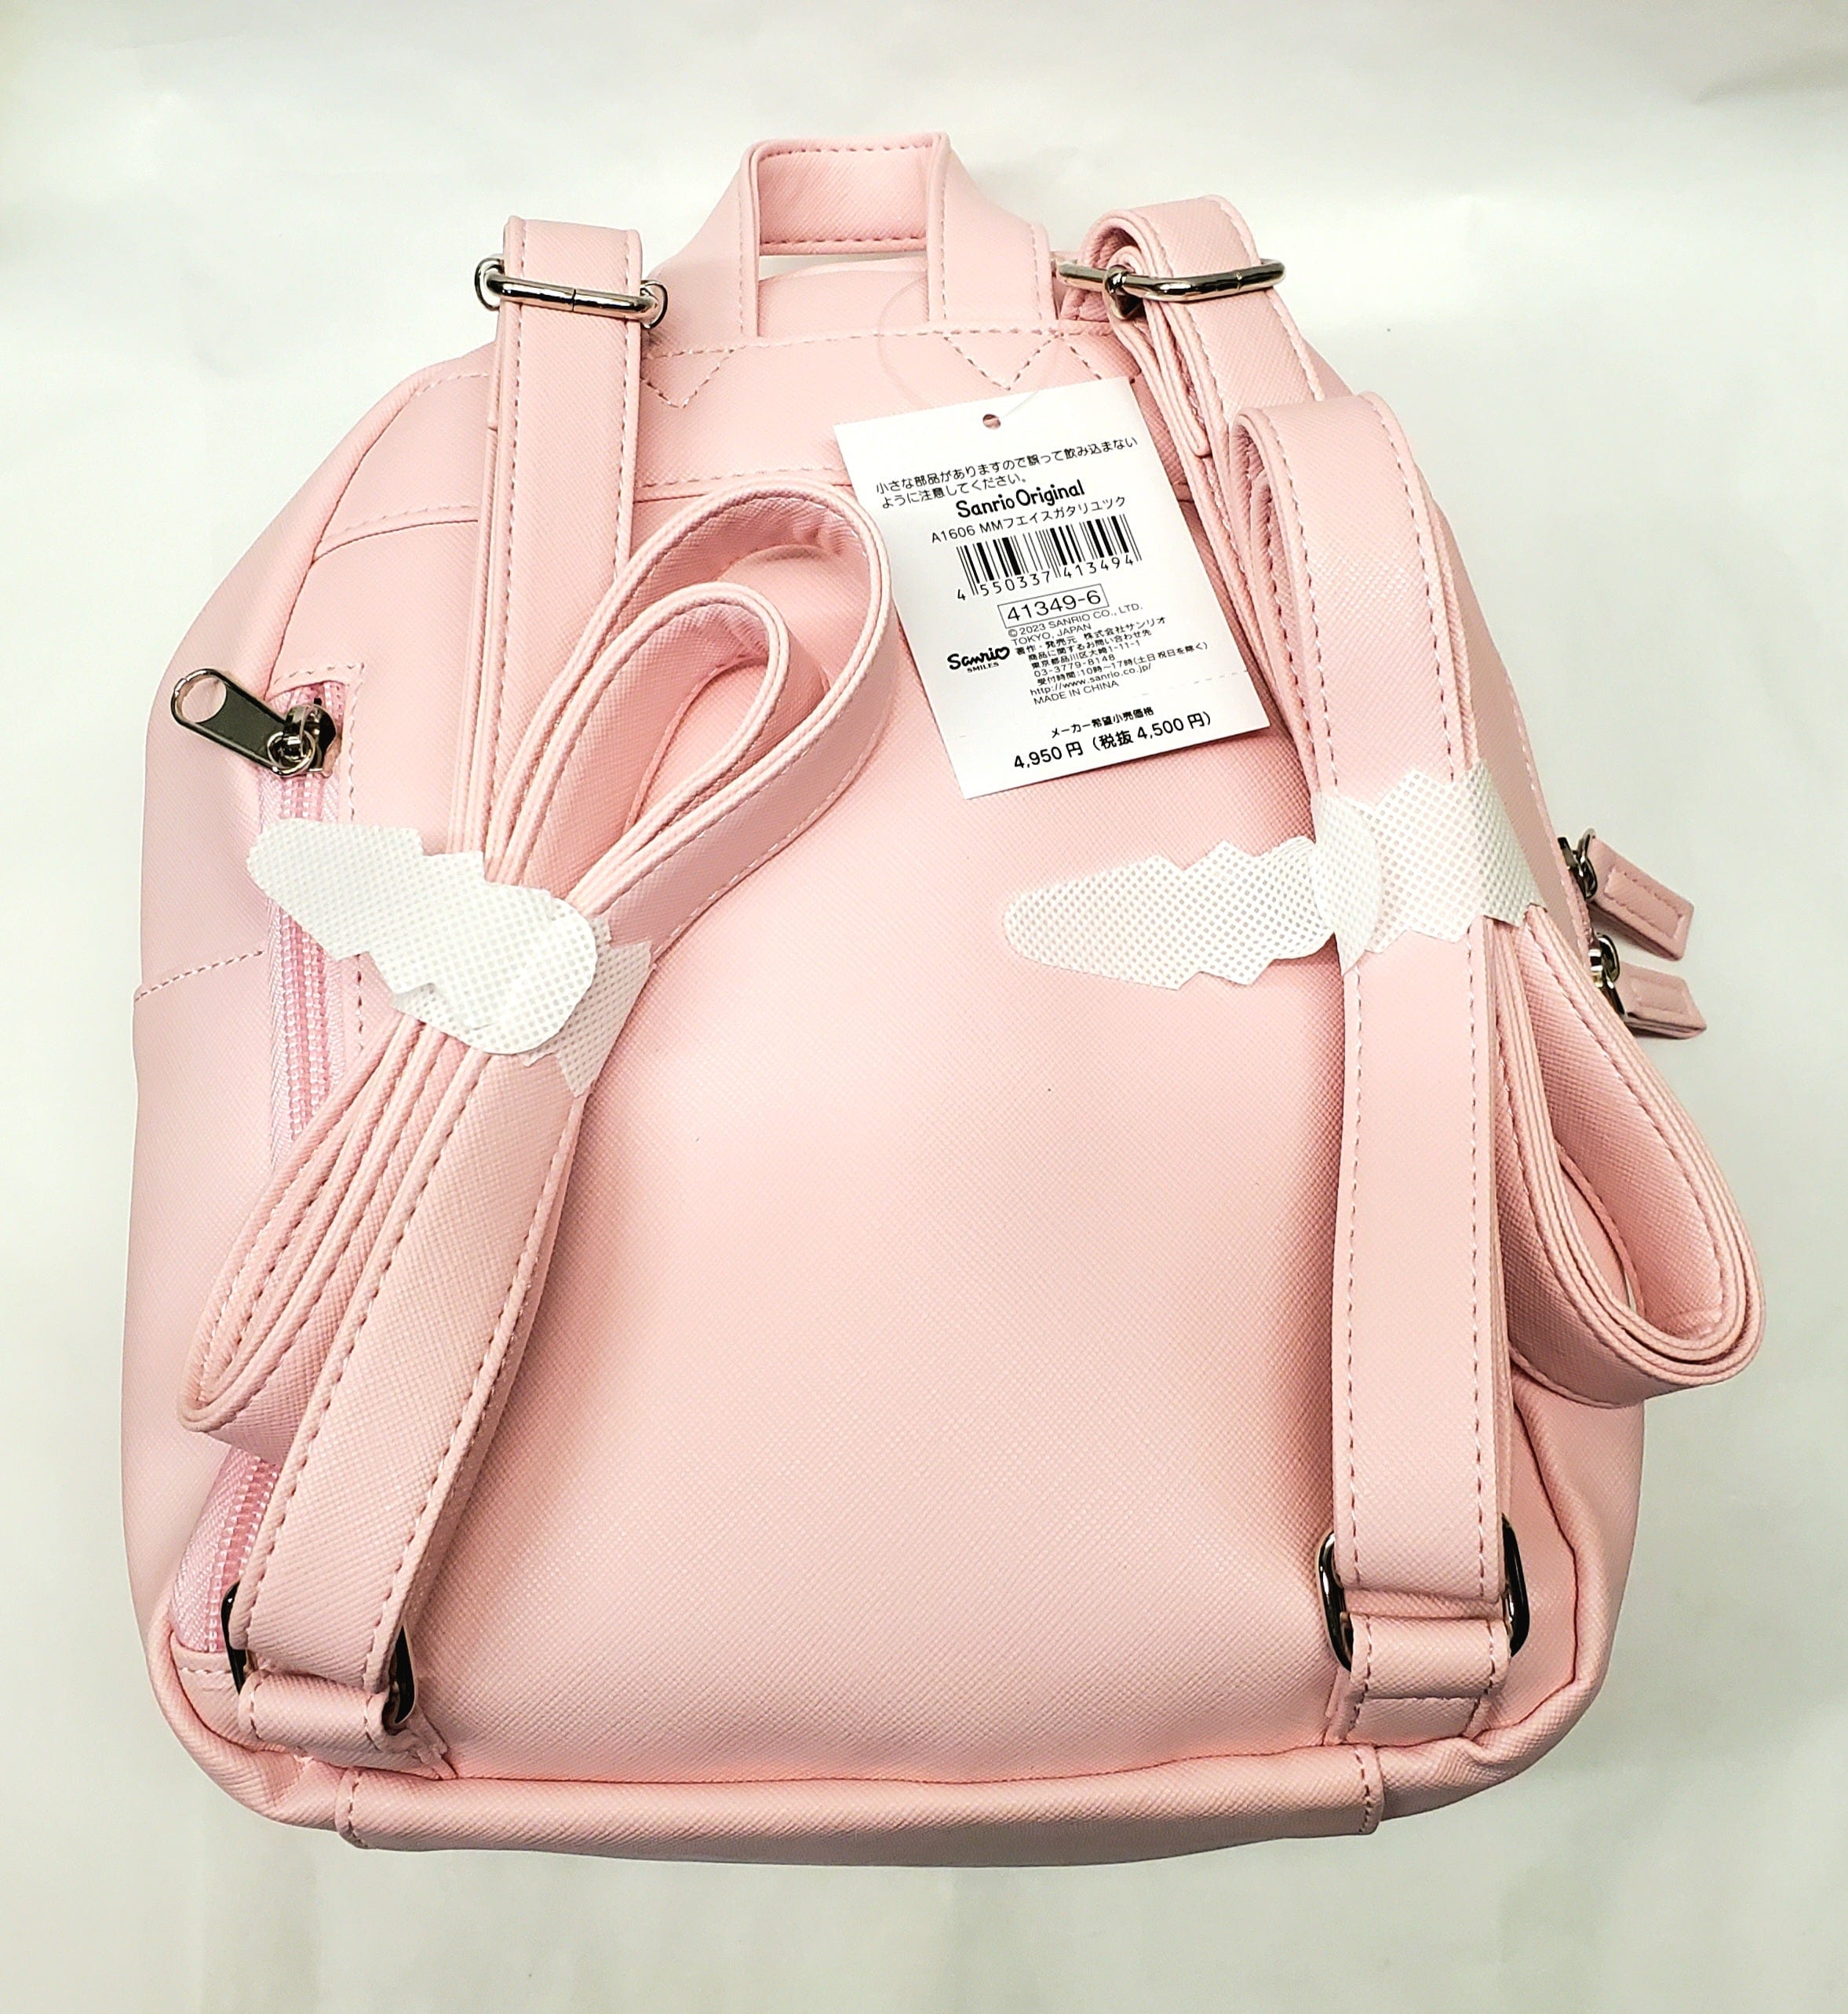 Enesco Sanrio My Melody Face Backpack Kawaii Gifts 4550337413494